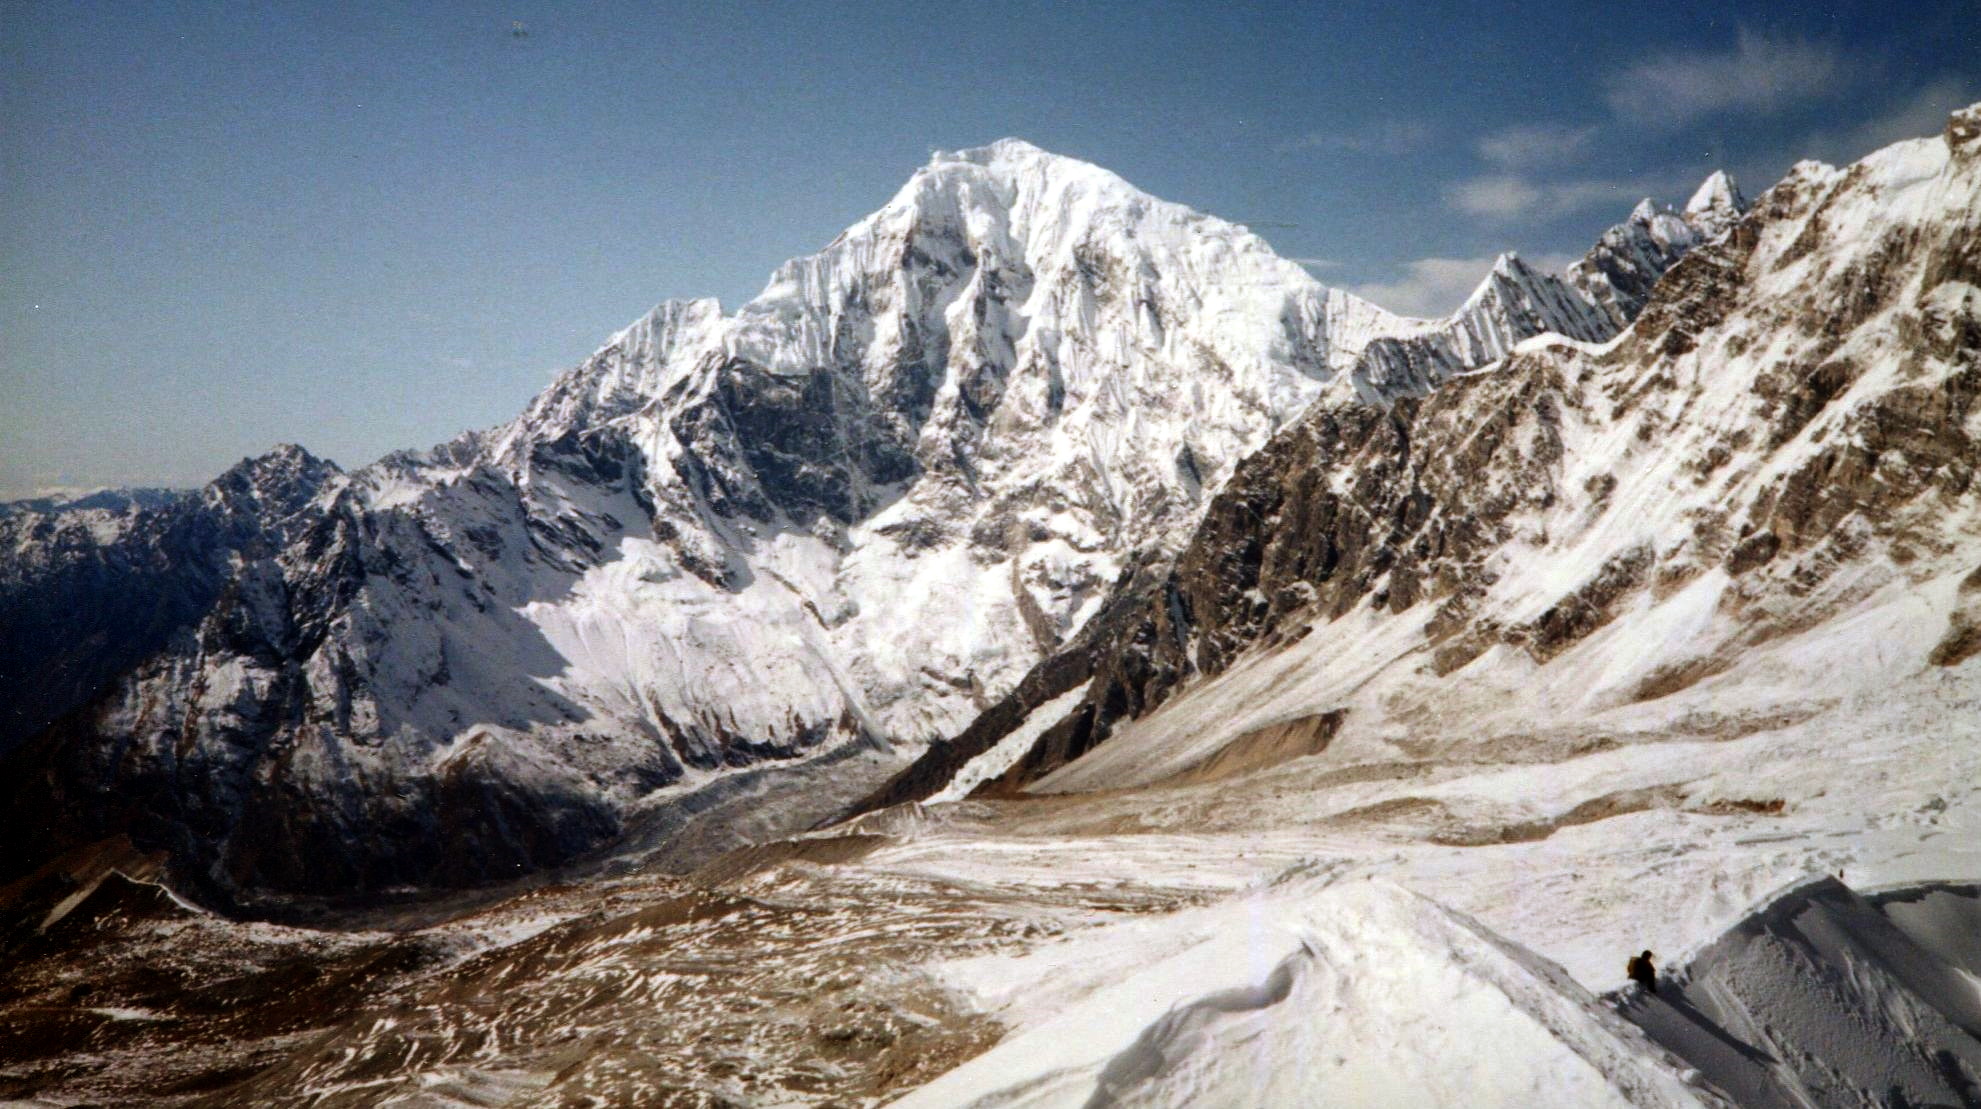 Mt.Langtang Lirung from Yala Peak